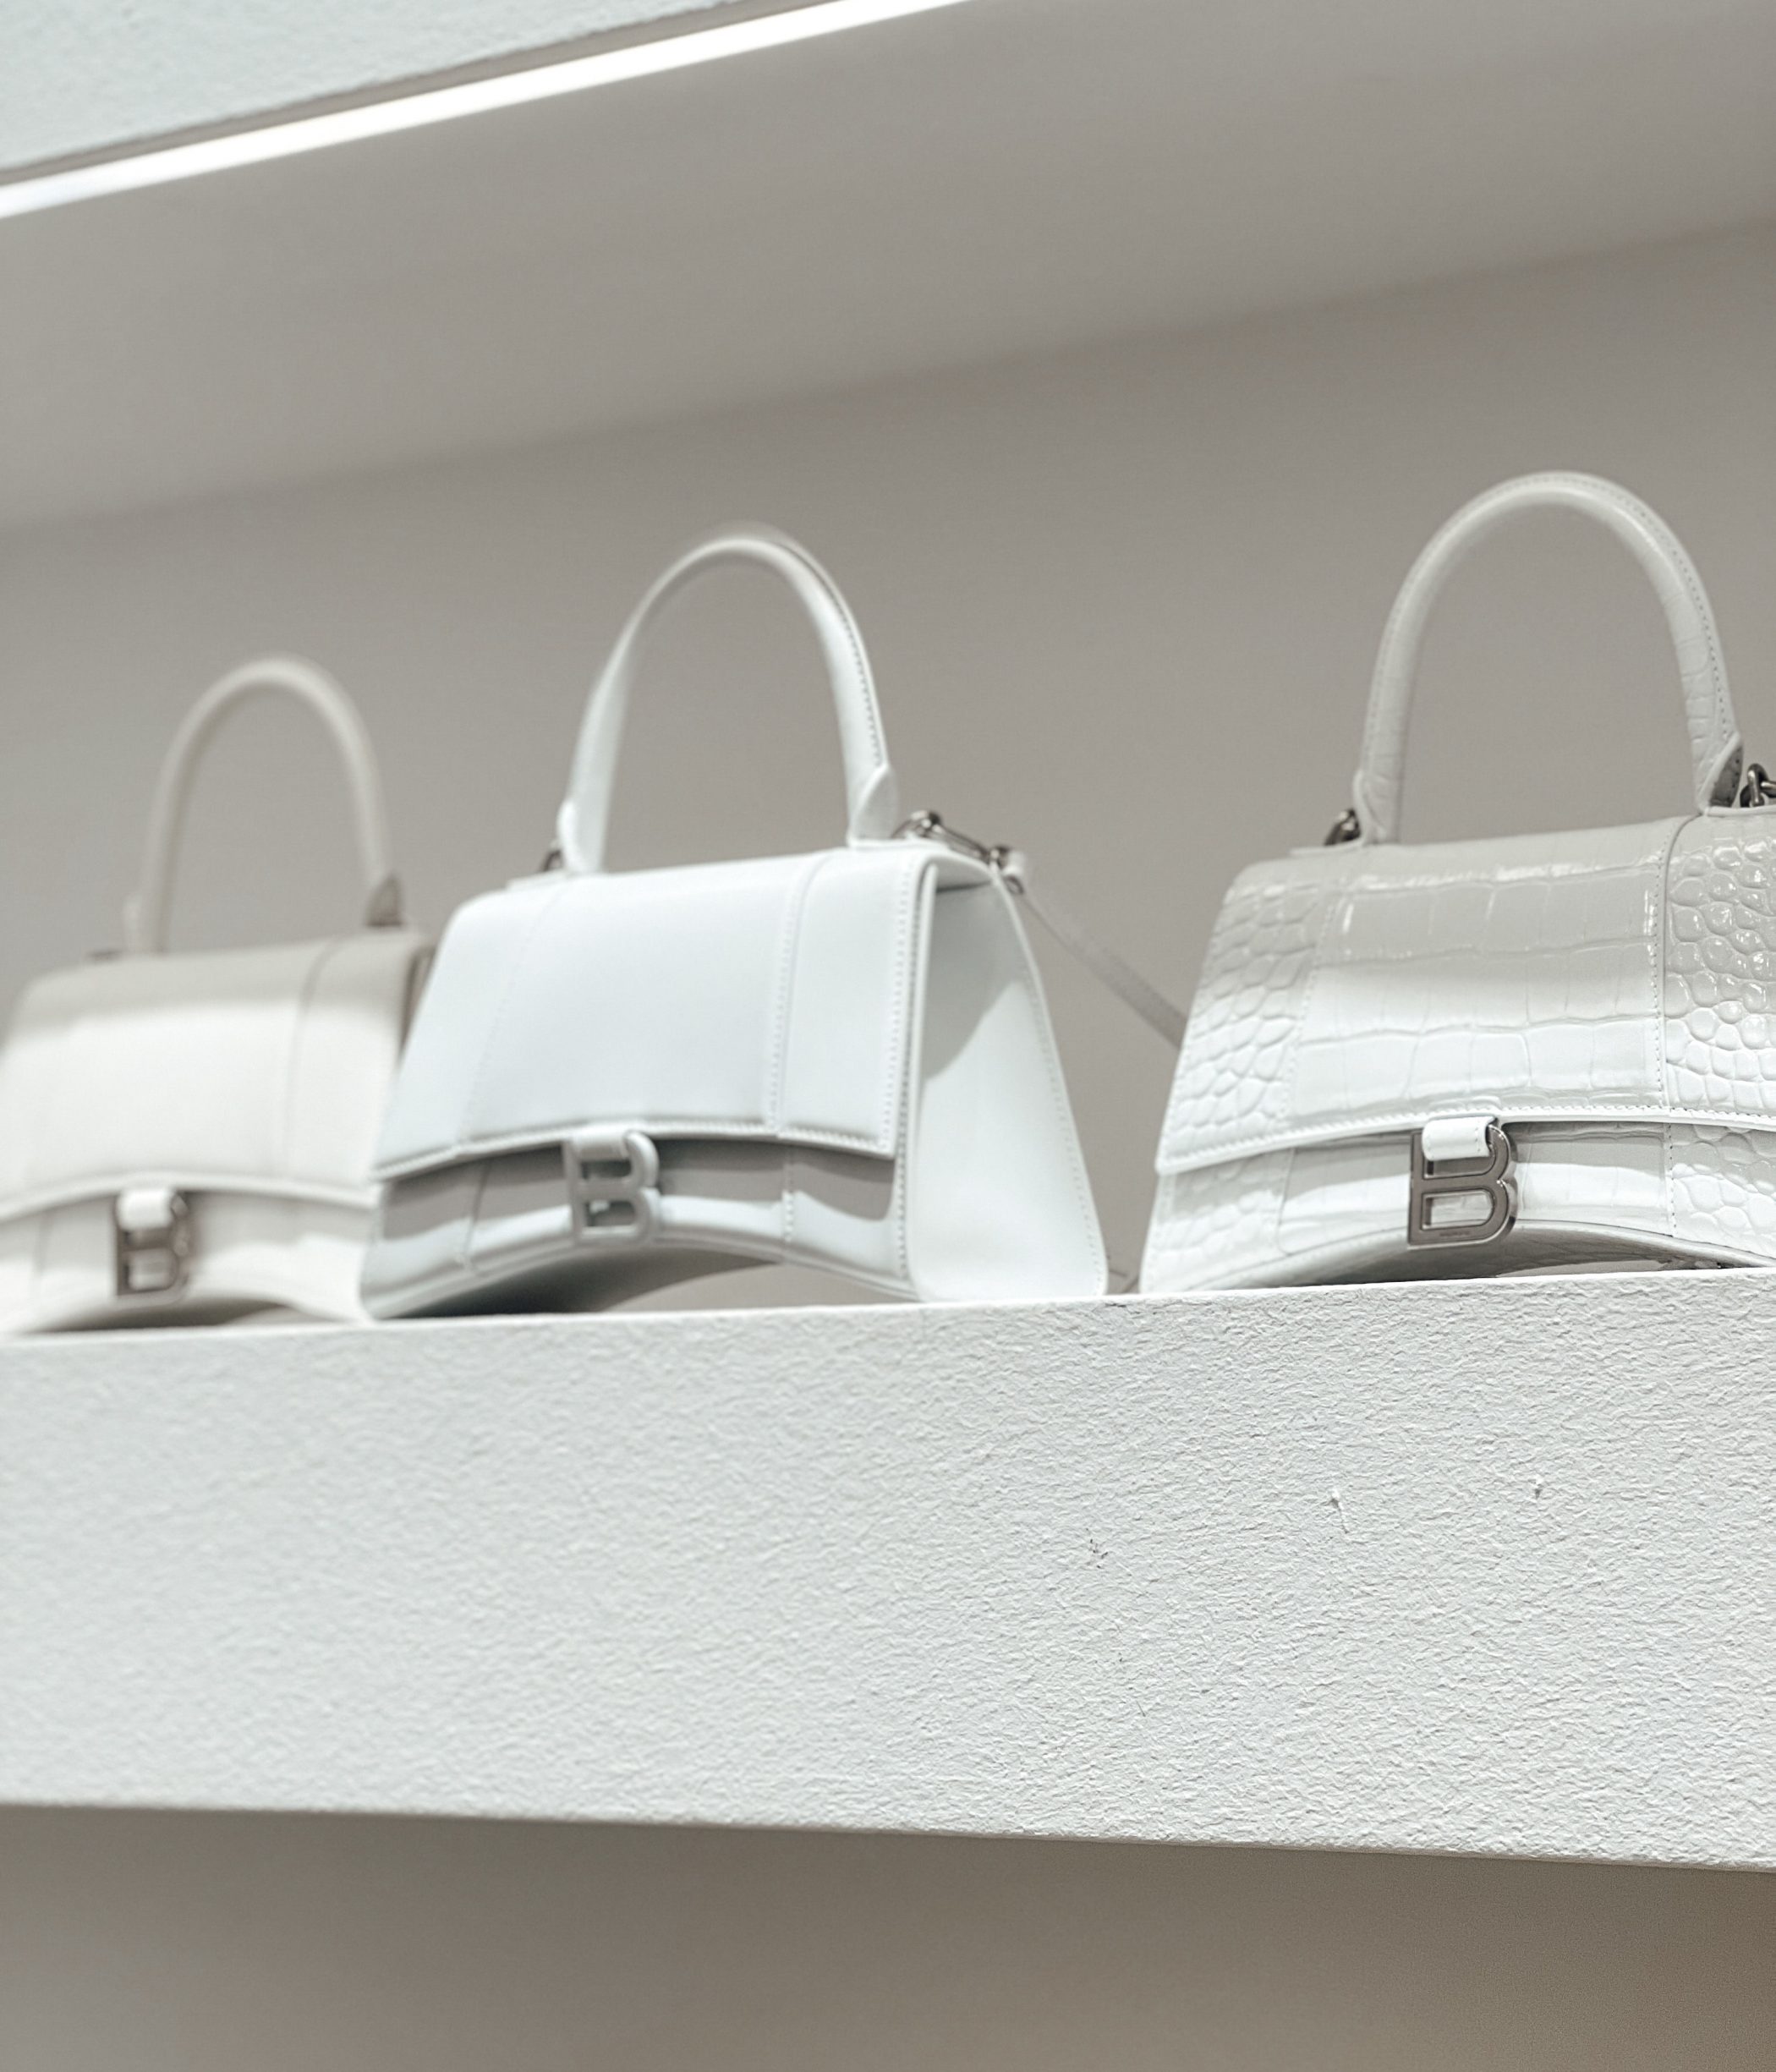 Balenciaga Hourglass Bag in drei verschiedenen Ausführungen in weiß bei KNILLI